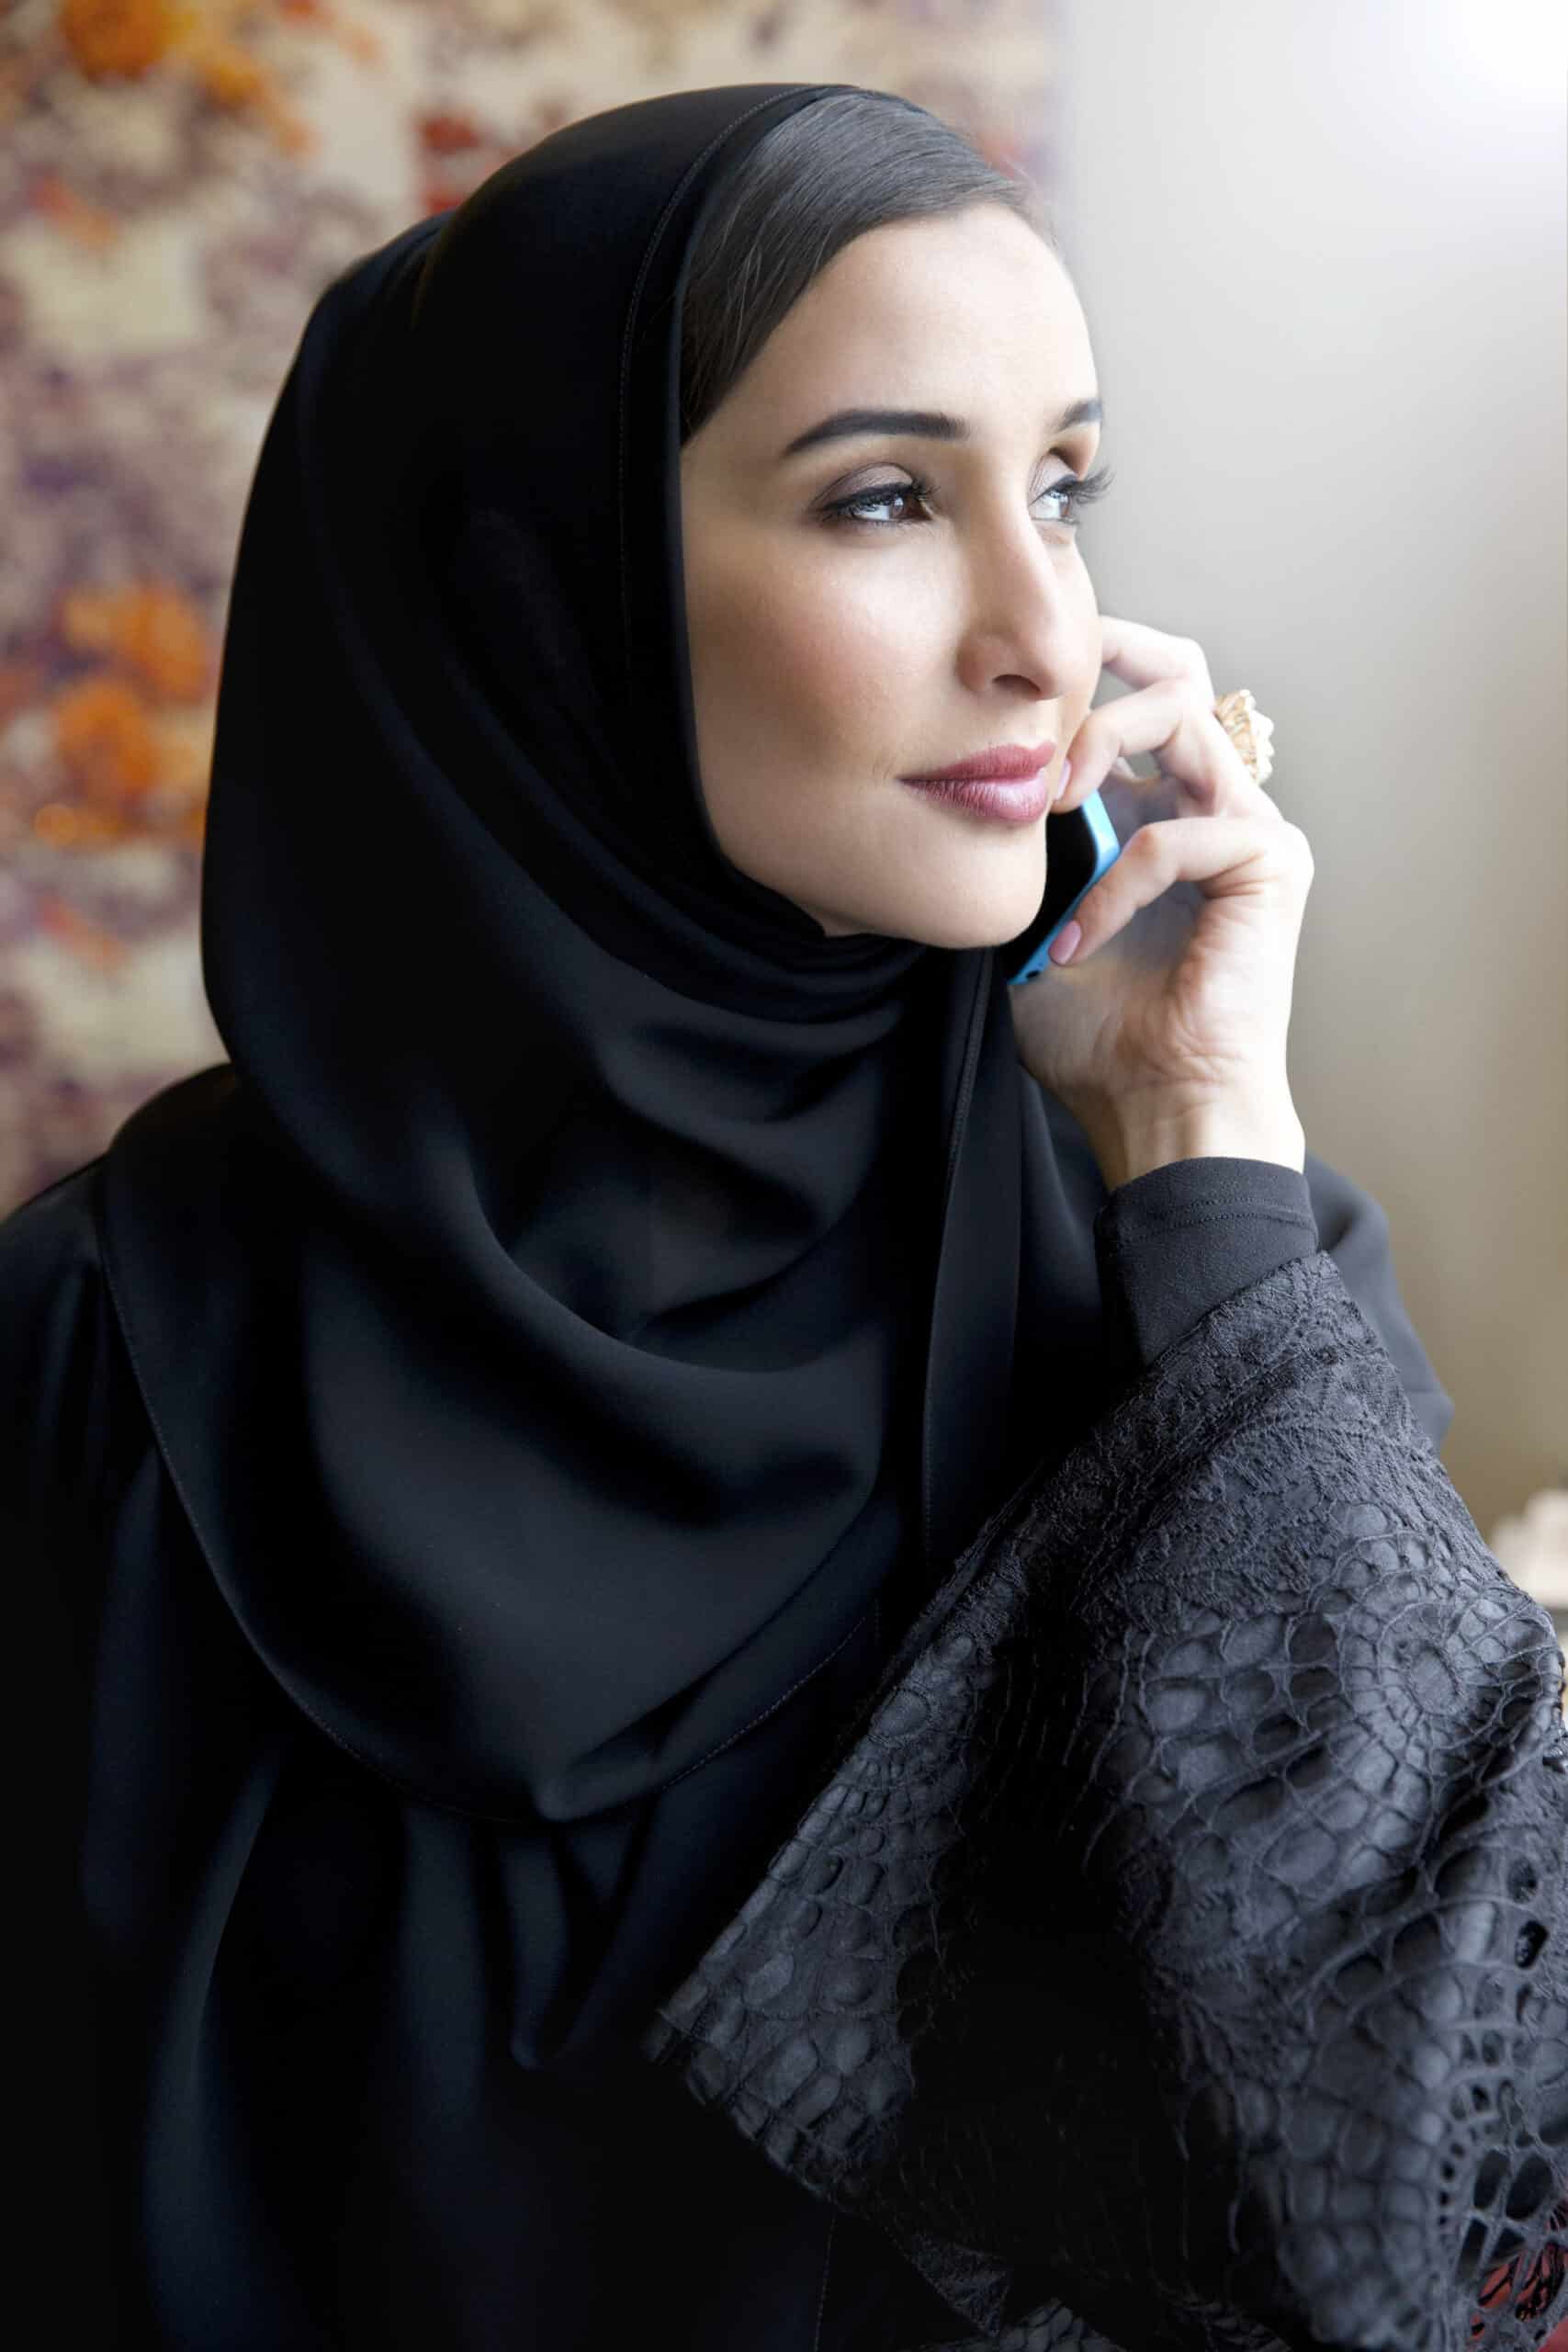 Eine Frau mit Hijab spricht in ein Smartphone und blickt nachdenklich aus dem Fenster. Der Fokus liegt auf ihrem gelassenen Gesichtsausdruck und den eleganten Details ihrer Kleidung. © Fotografie Tomas Rodriguez